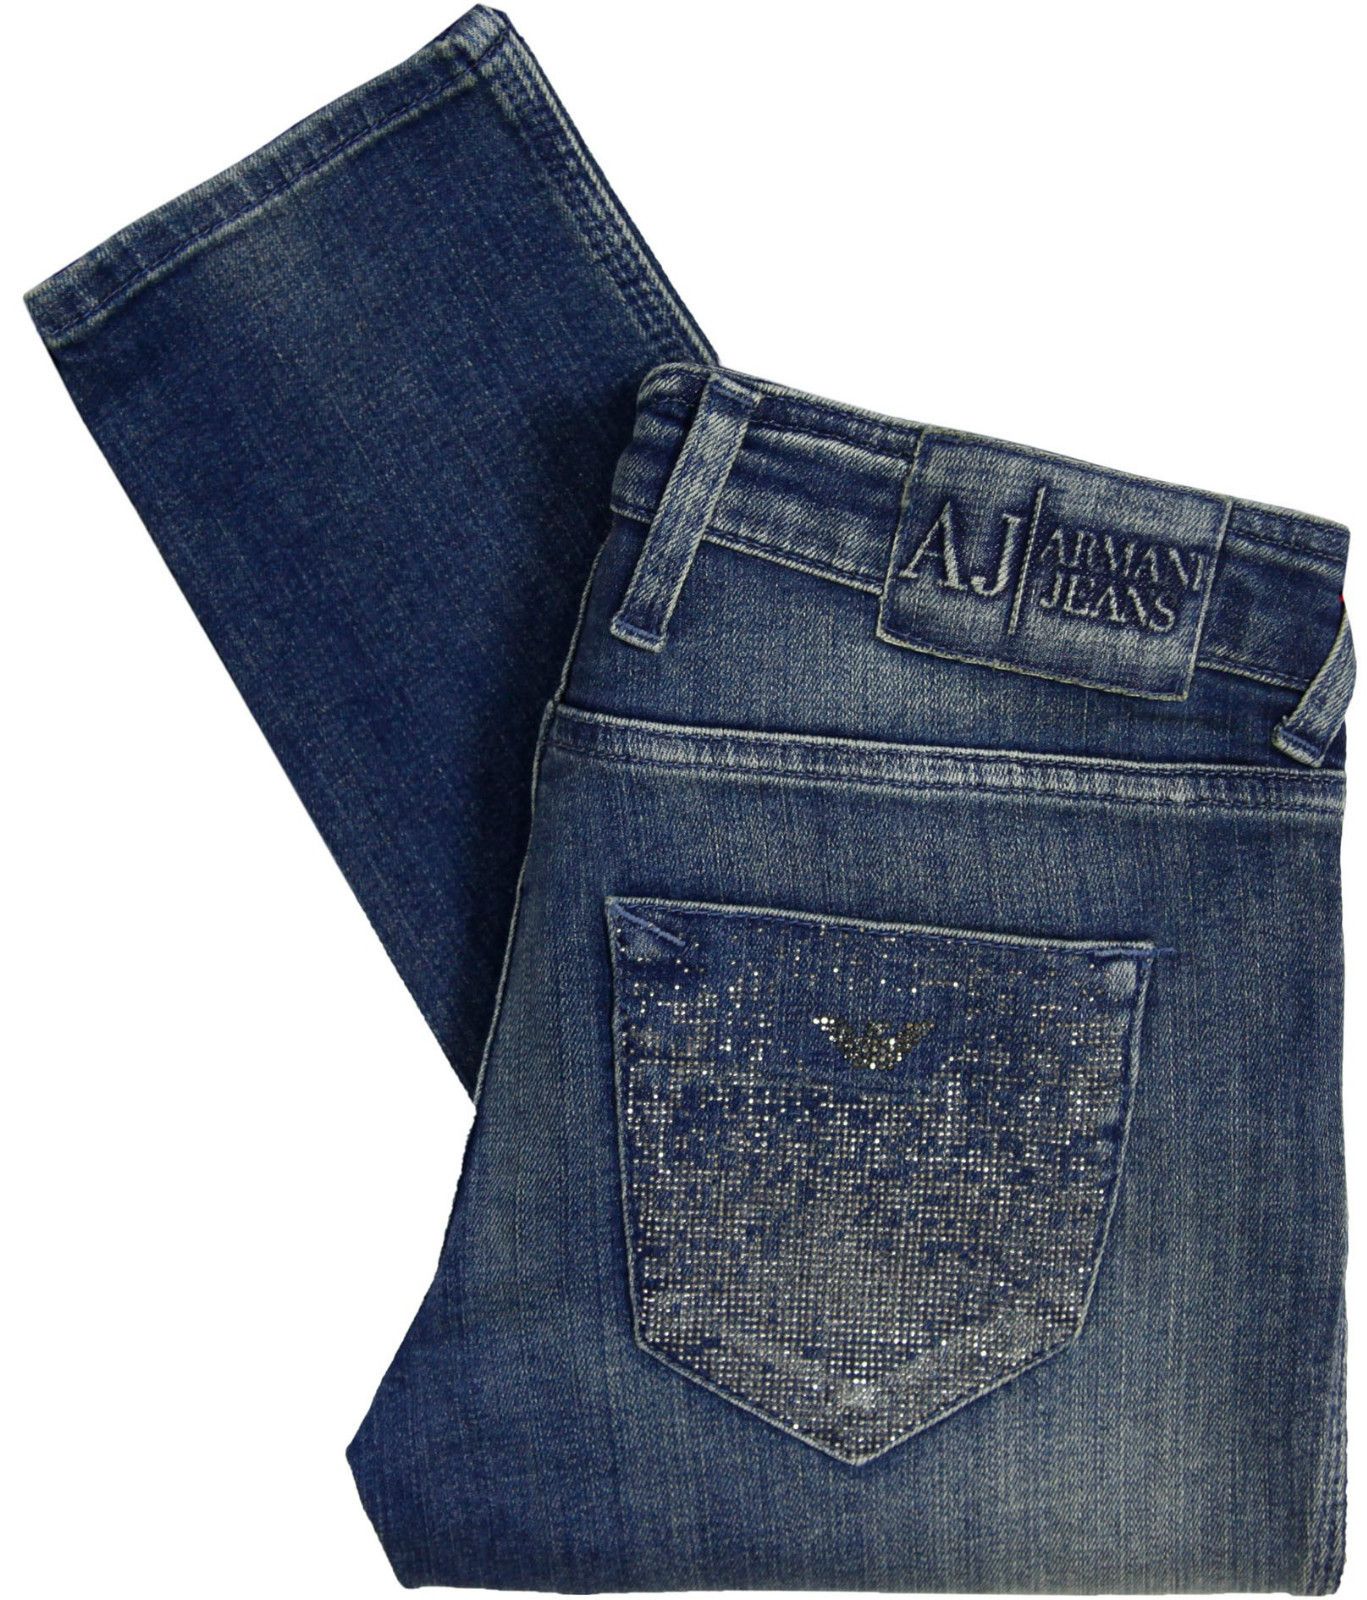 Armani Jeans Womens J40 Skinny Fit Rhinestone Jeans Blue S5J403Q